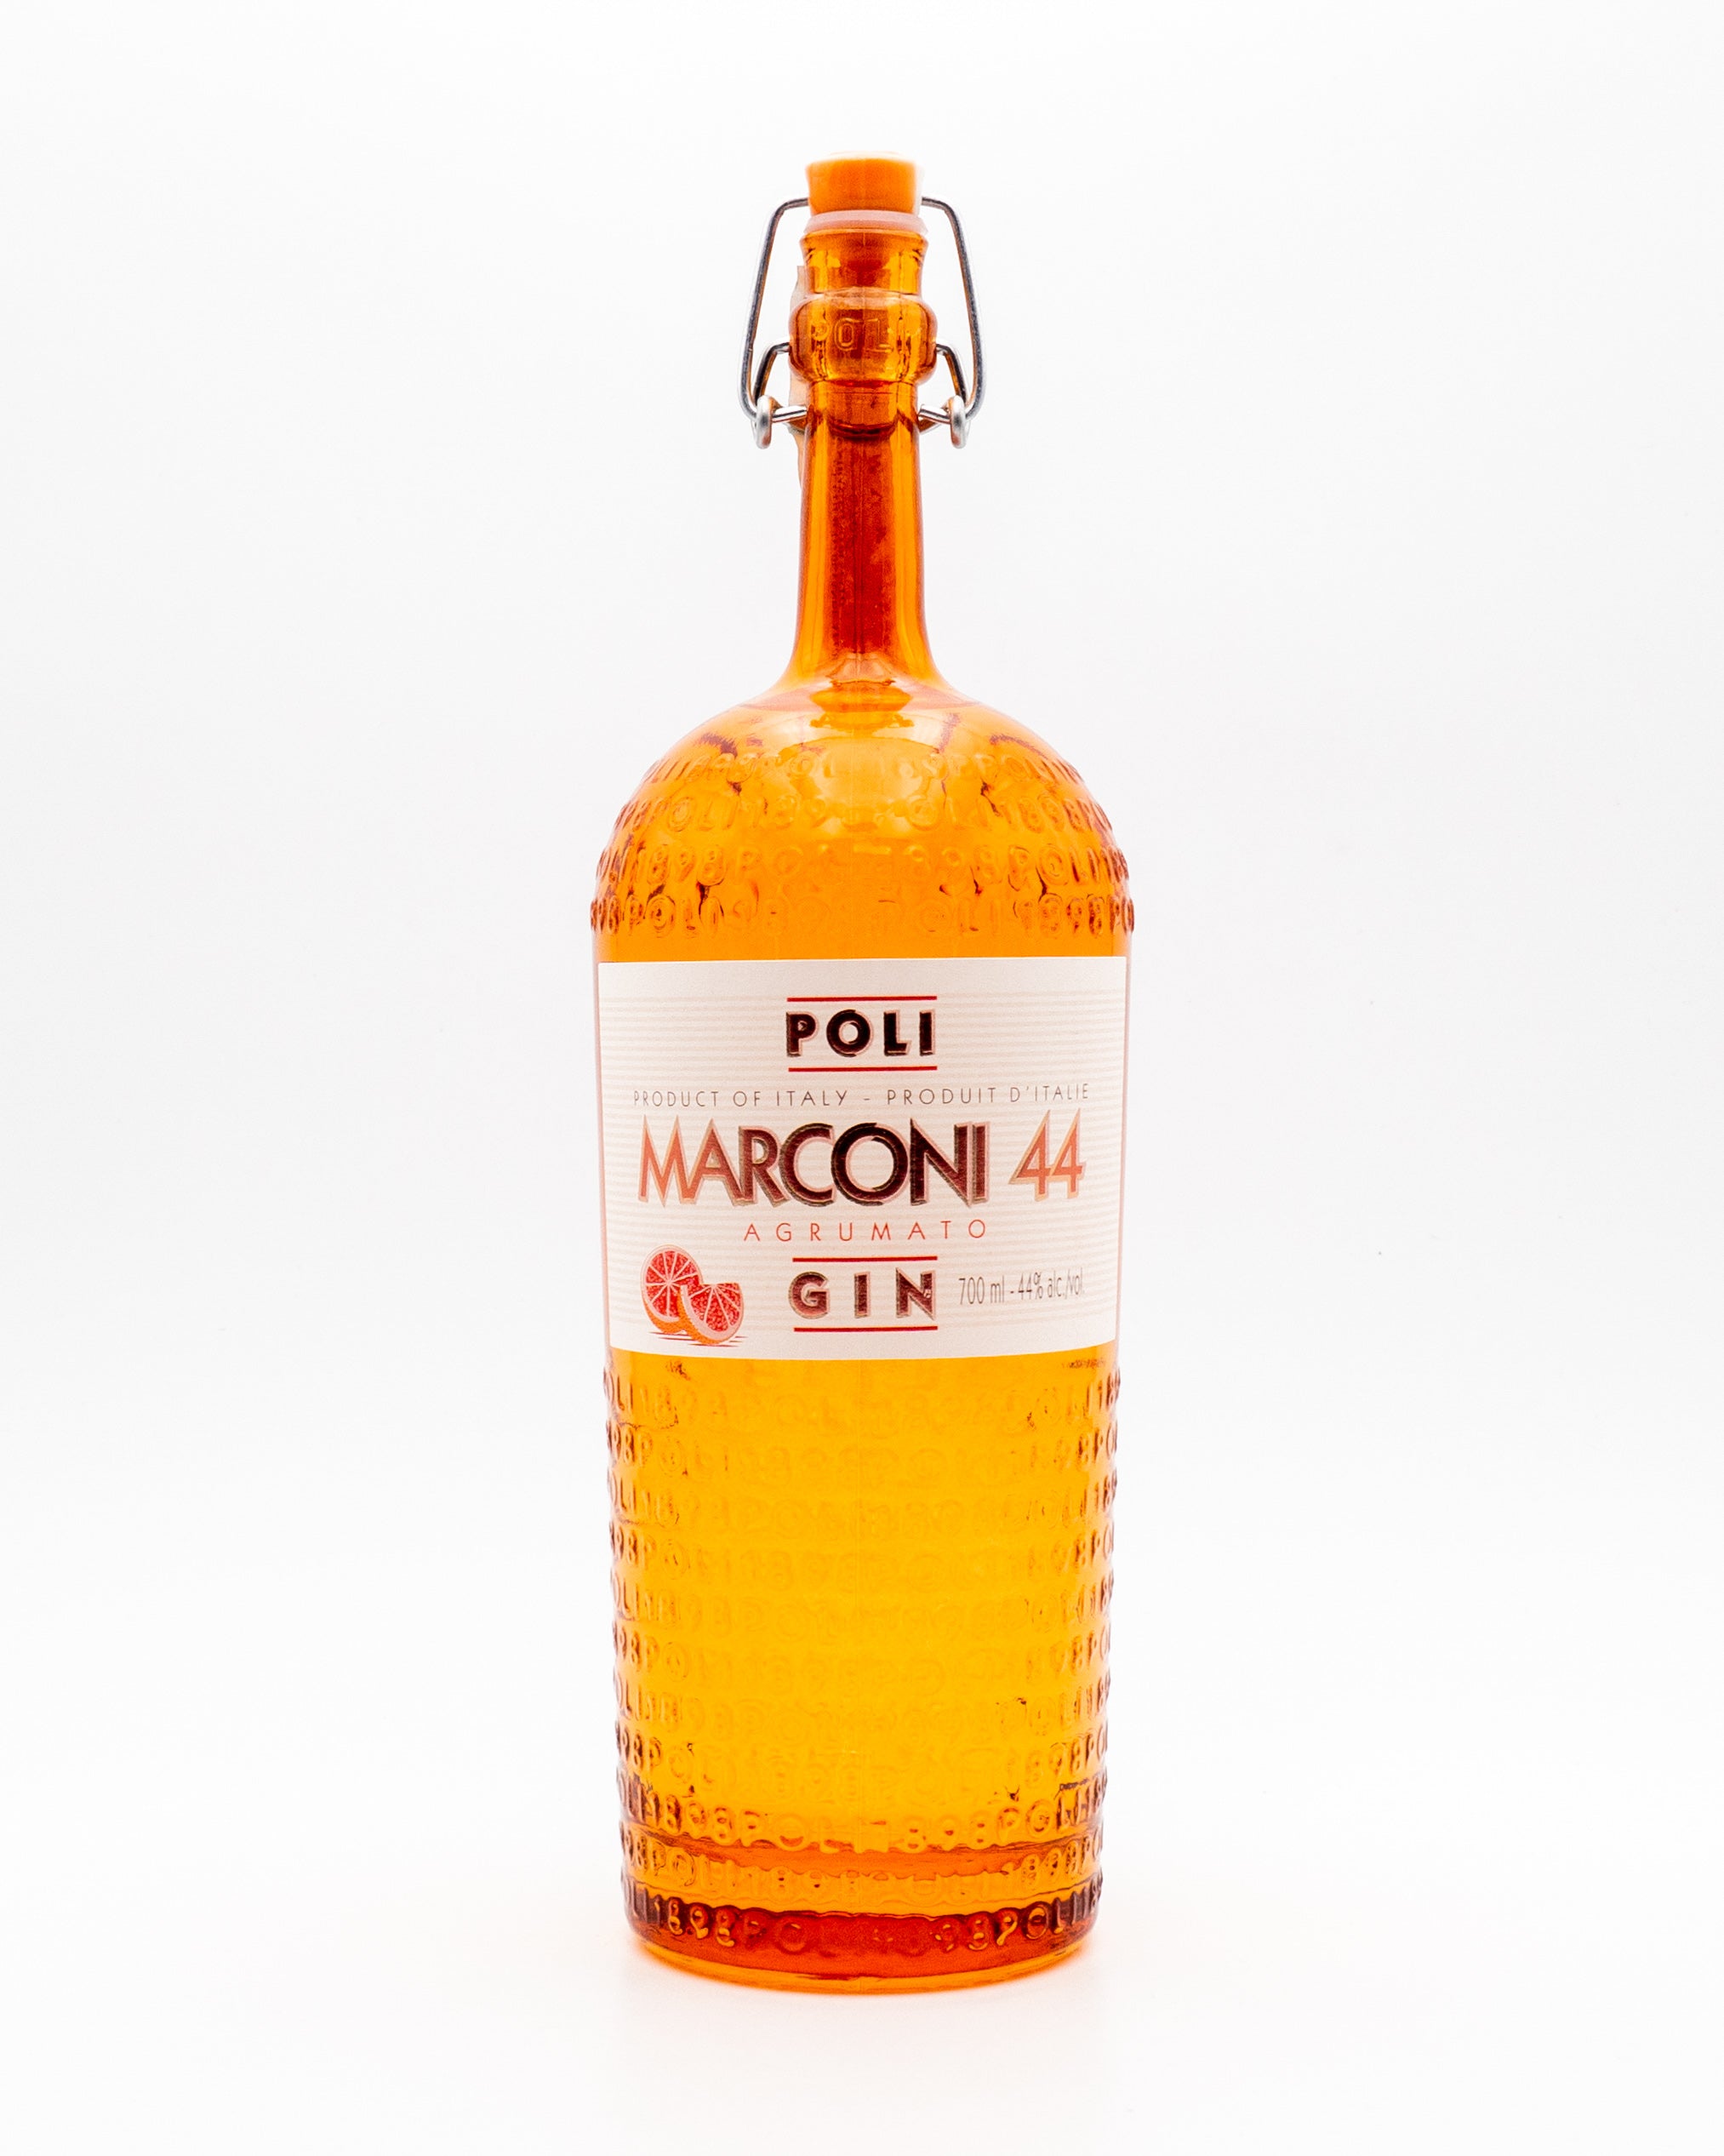 Gin Marconi 44 agrumato - Poli